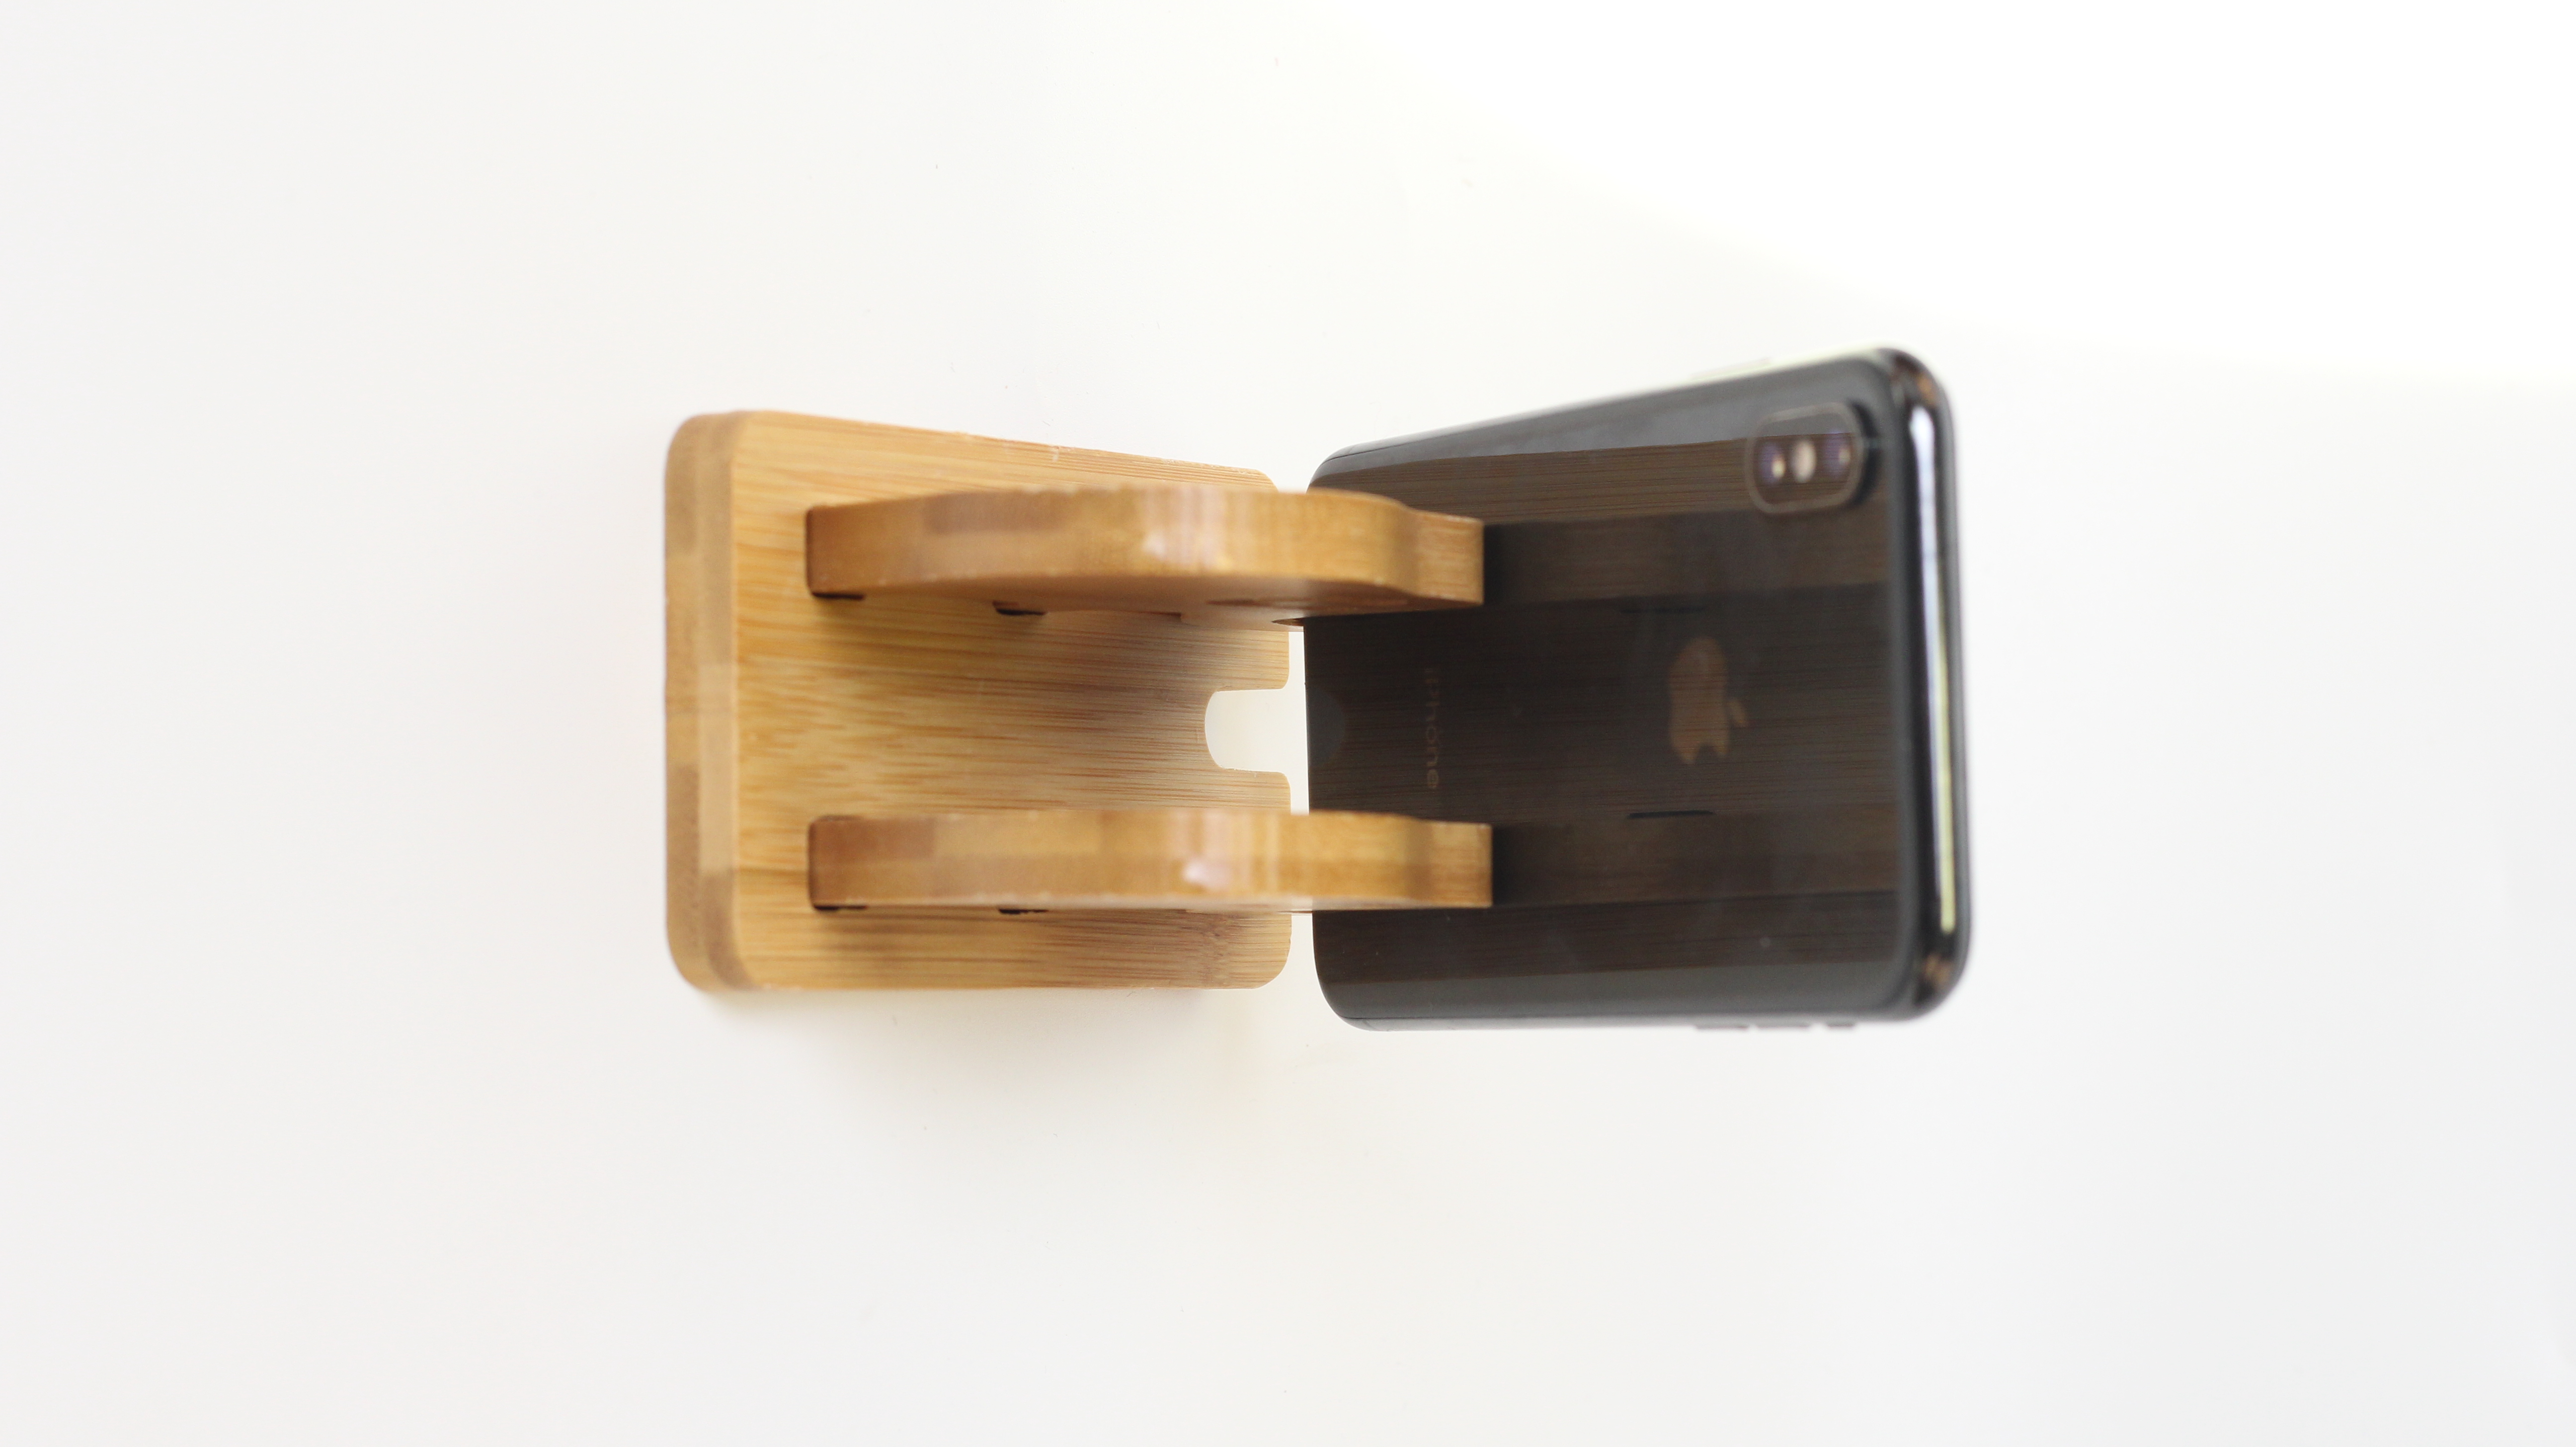 Elephant bamboo and wood mobile phone bracket